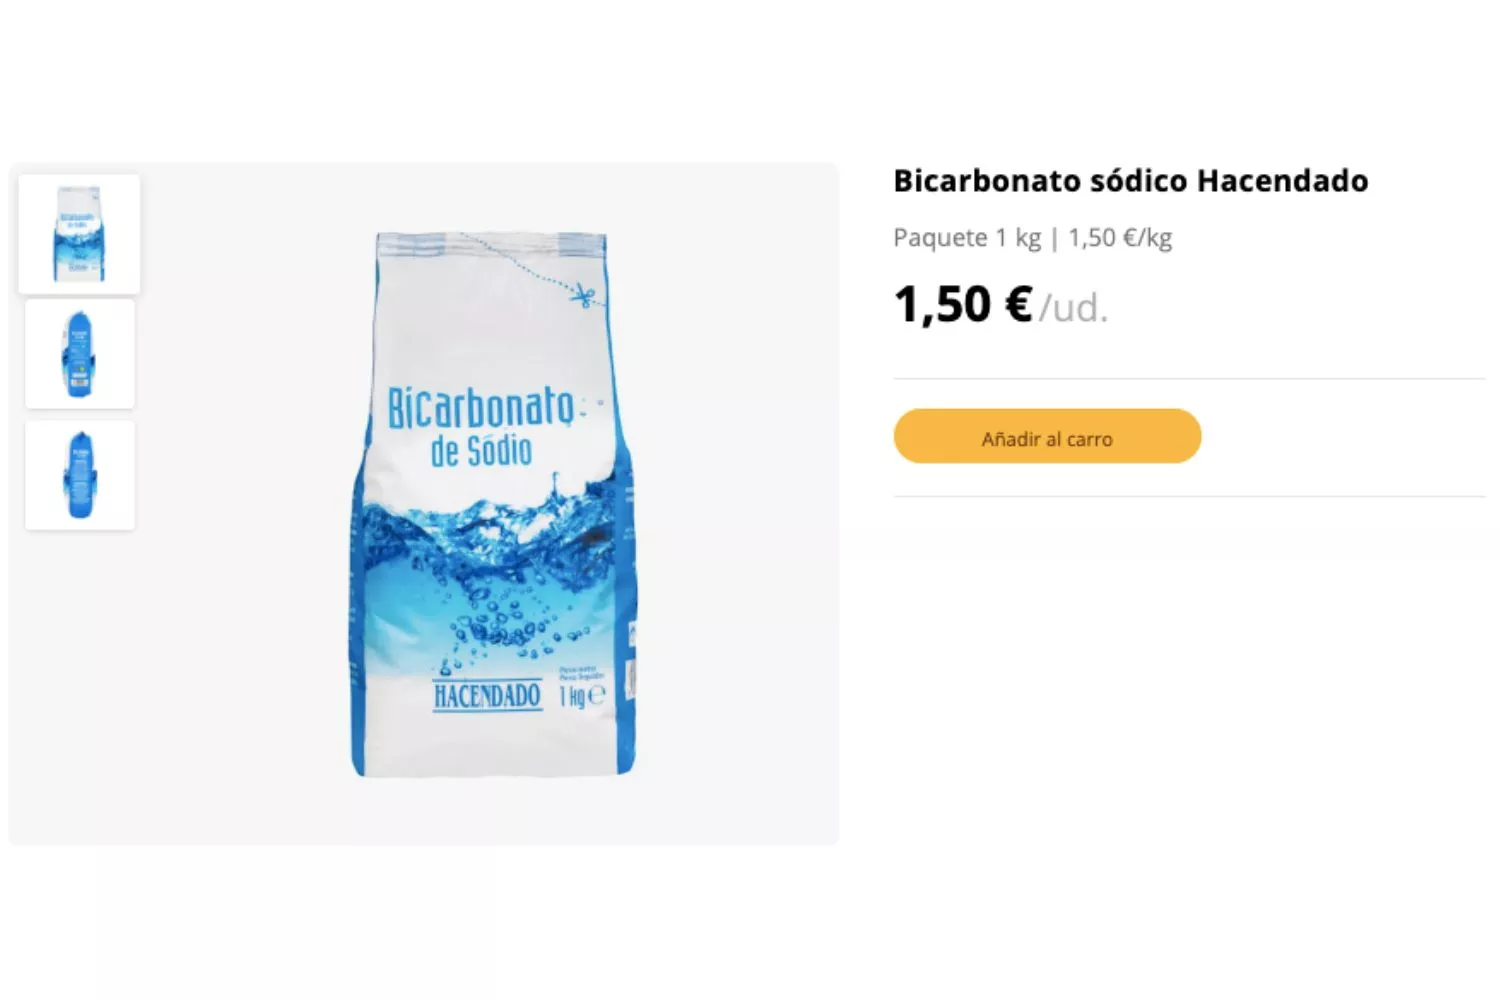 Bicarbonato de sodio de la marca Hacendado / MERCADONA